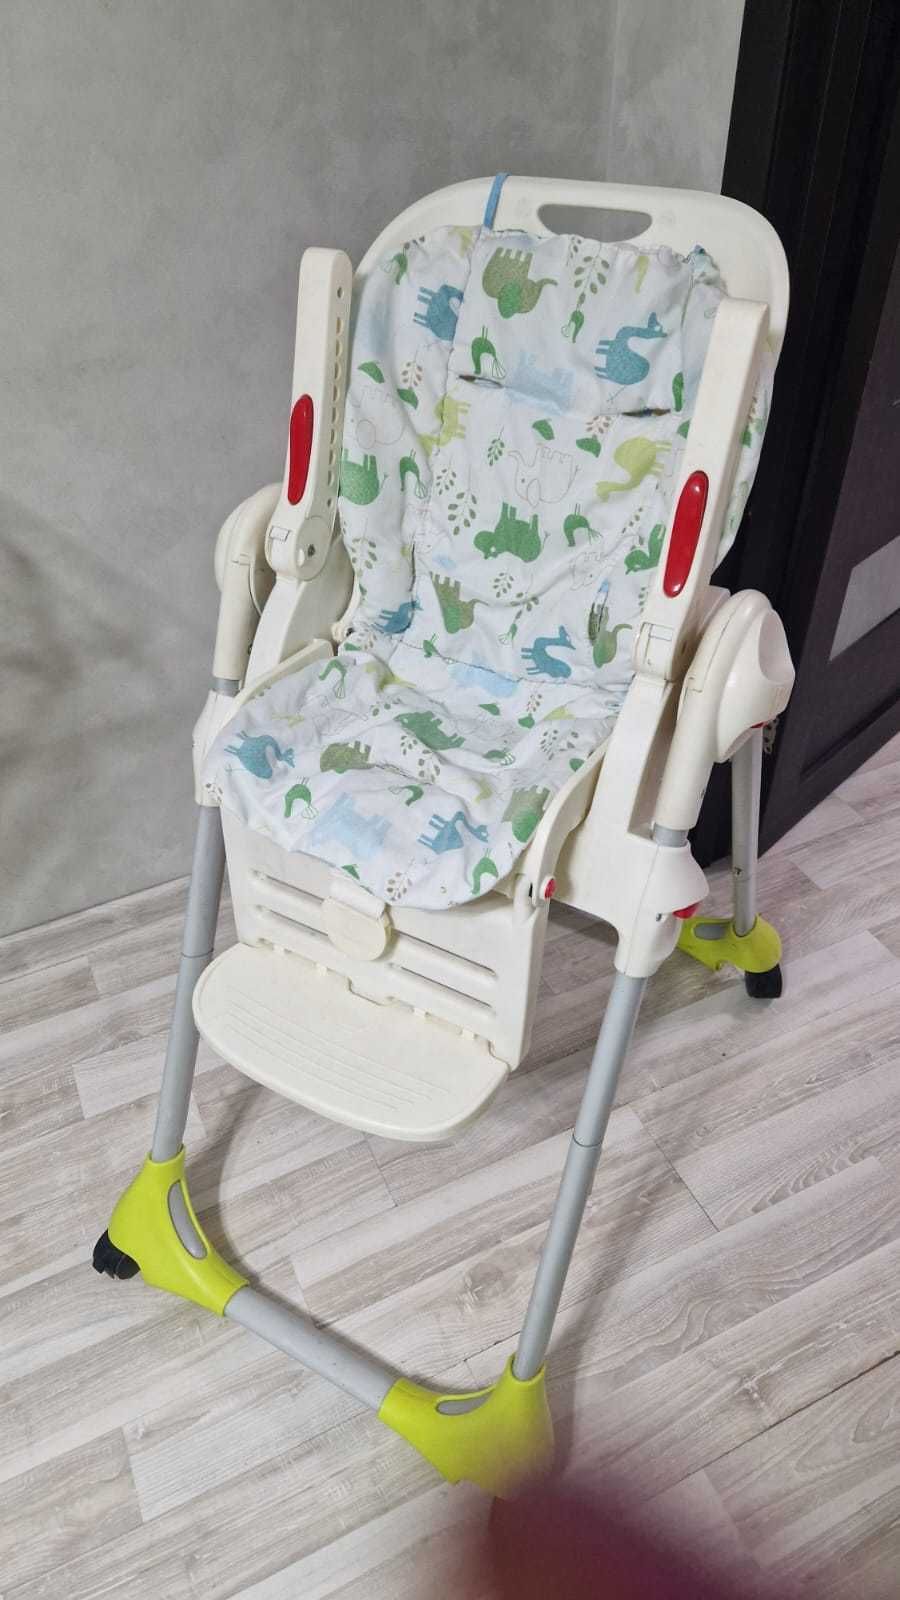 продается детский стульчик